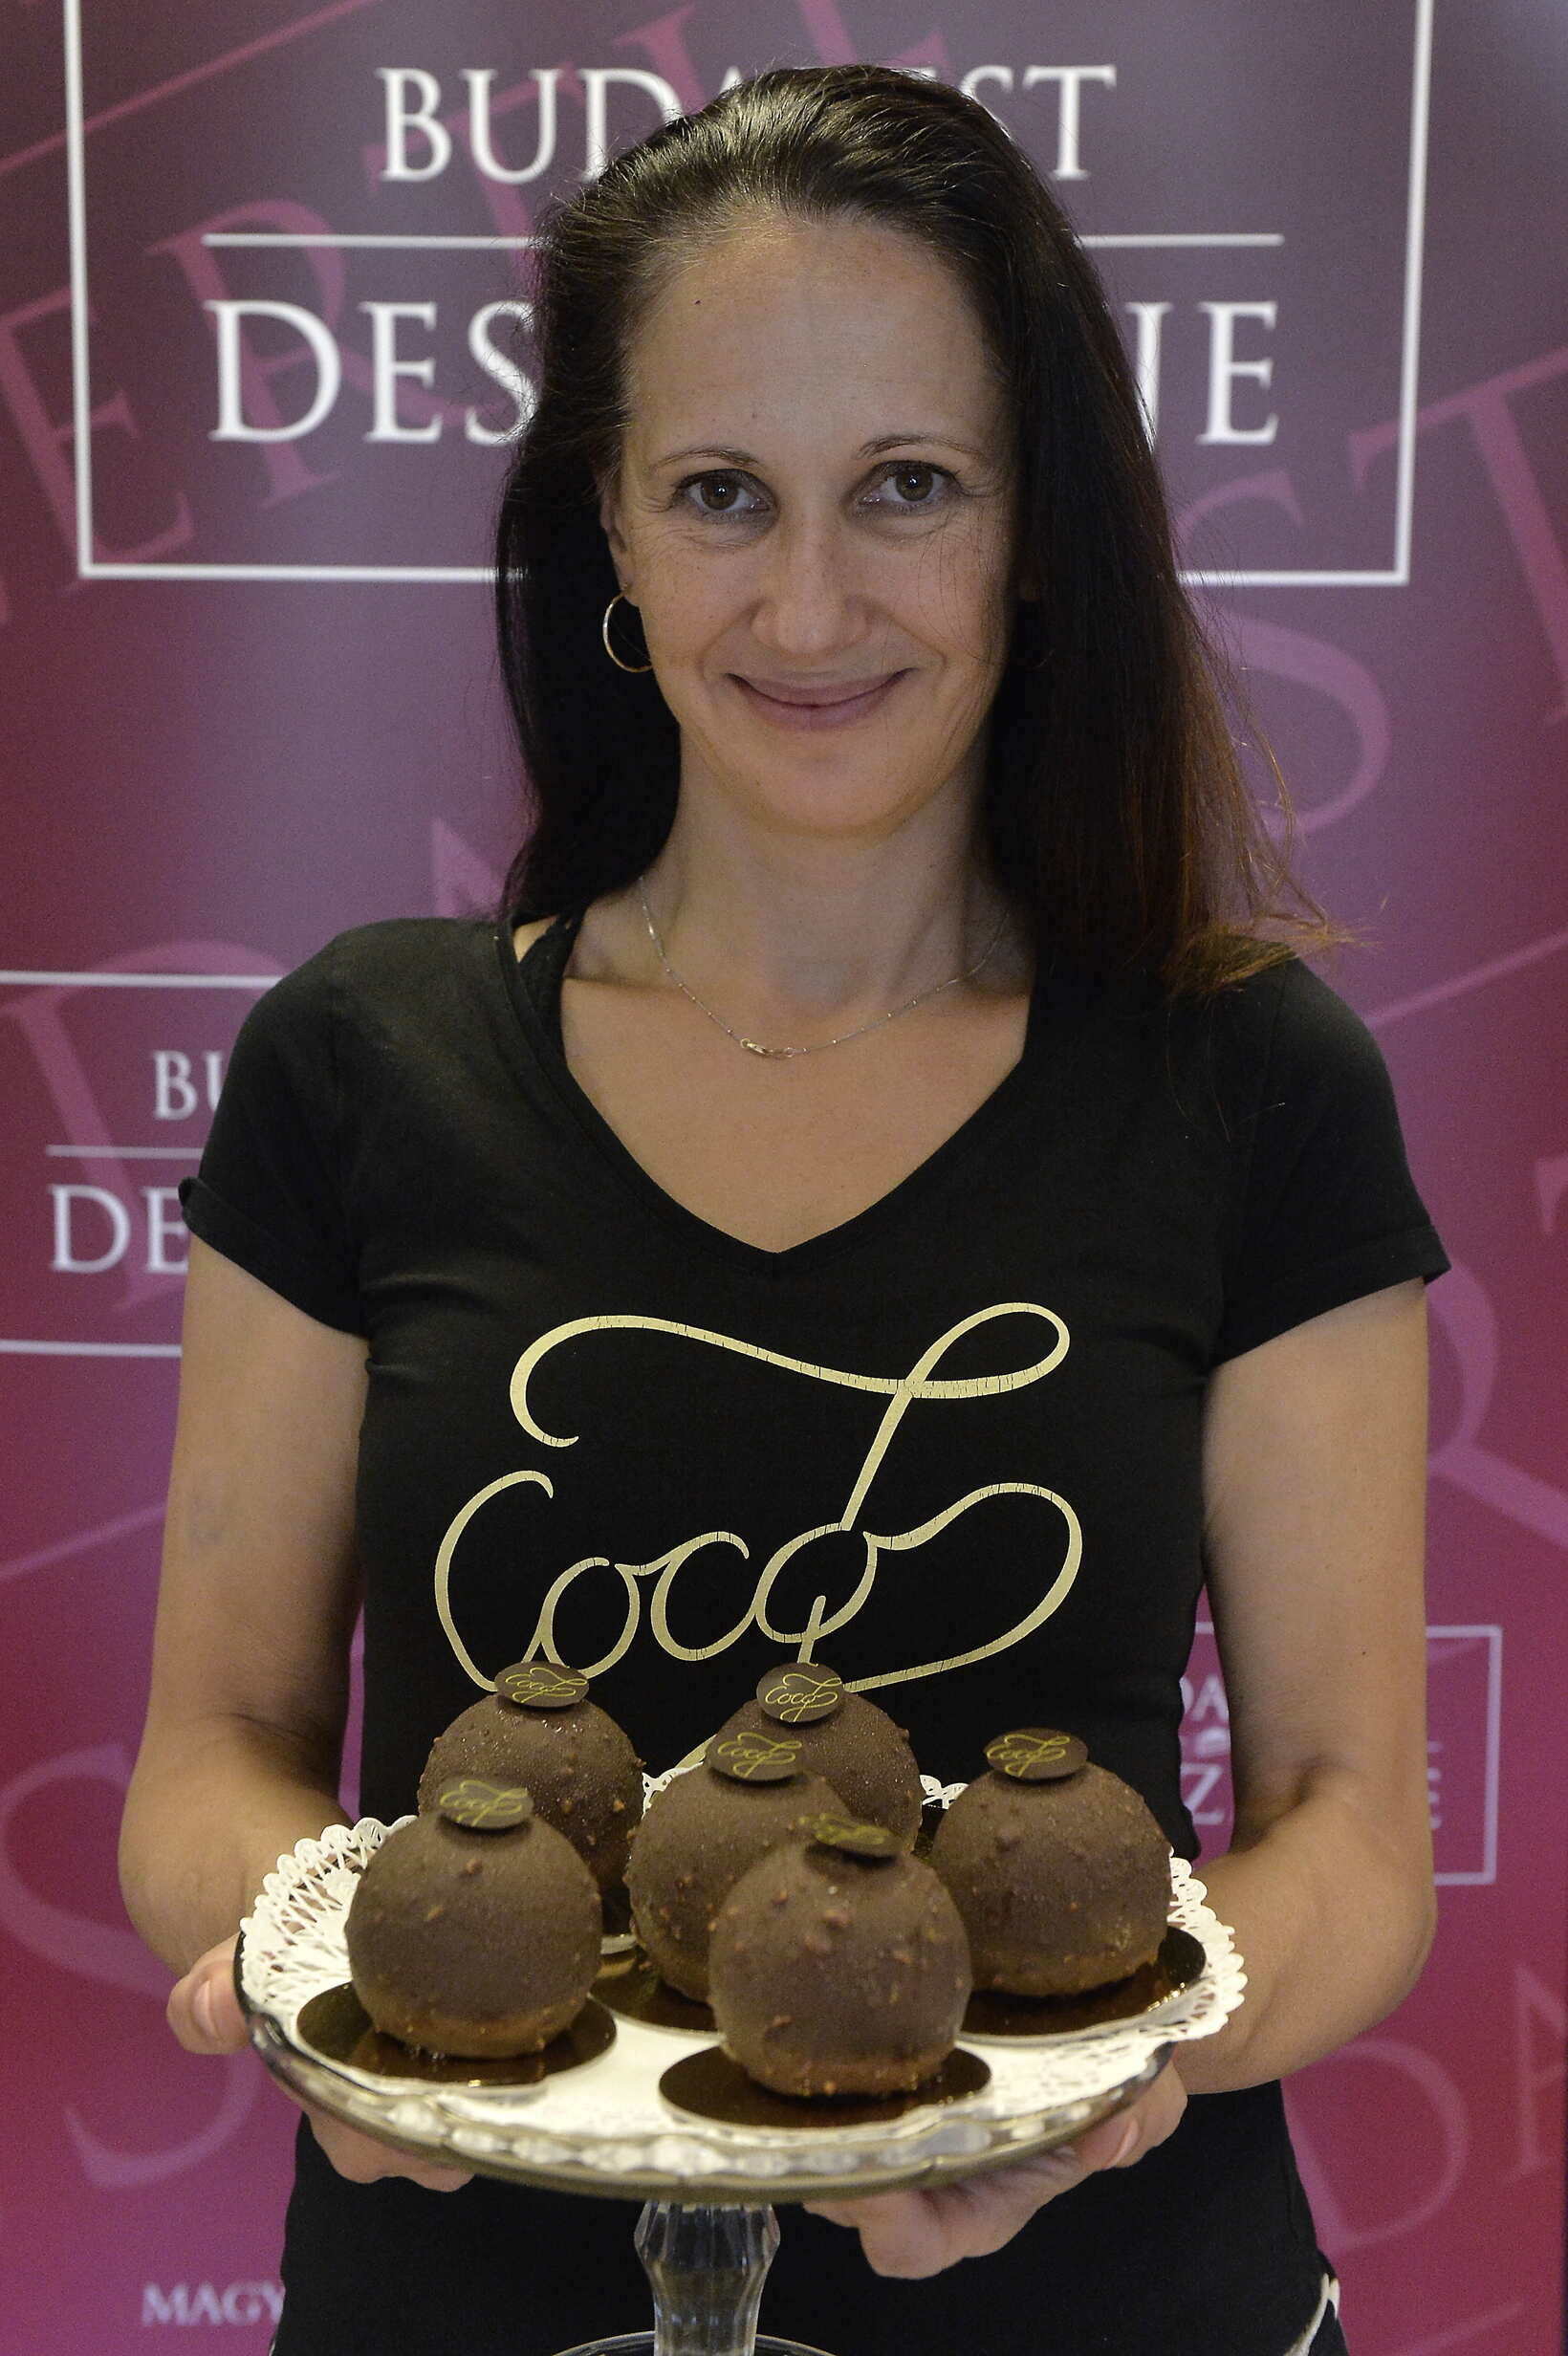 Postre-de-Budapest-Coco7-Chocolate-Shop-cake-food